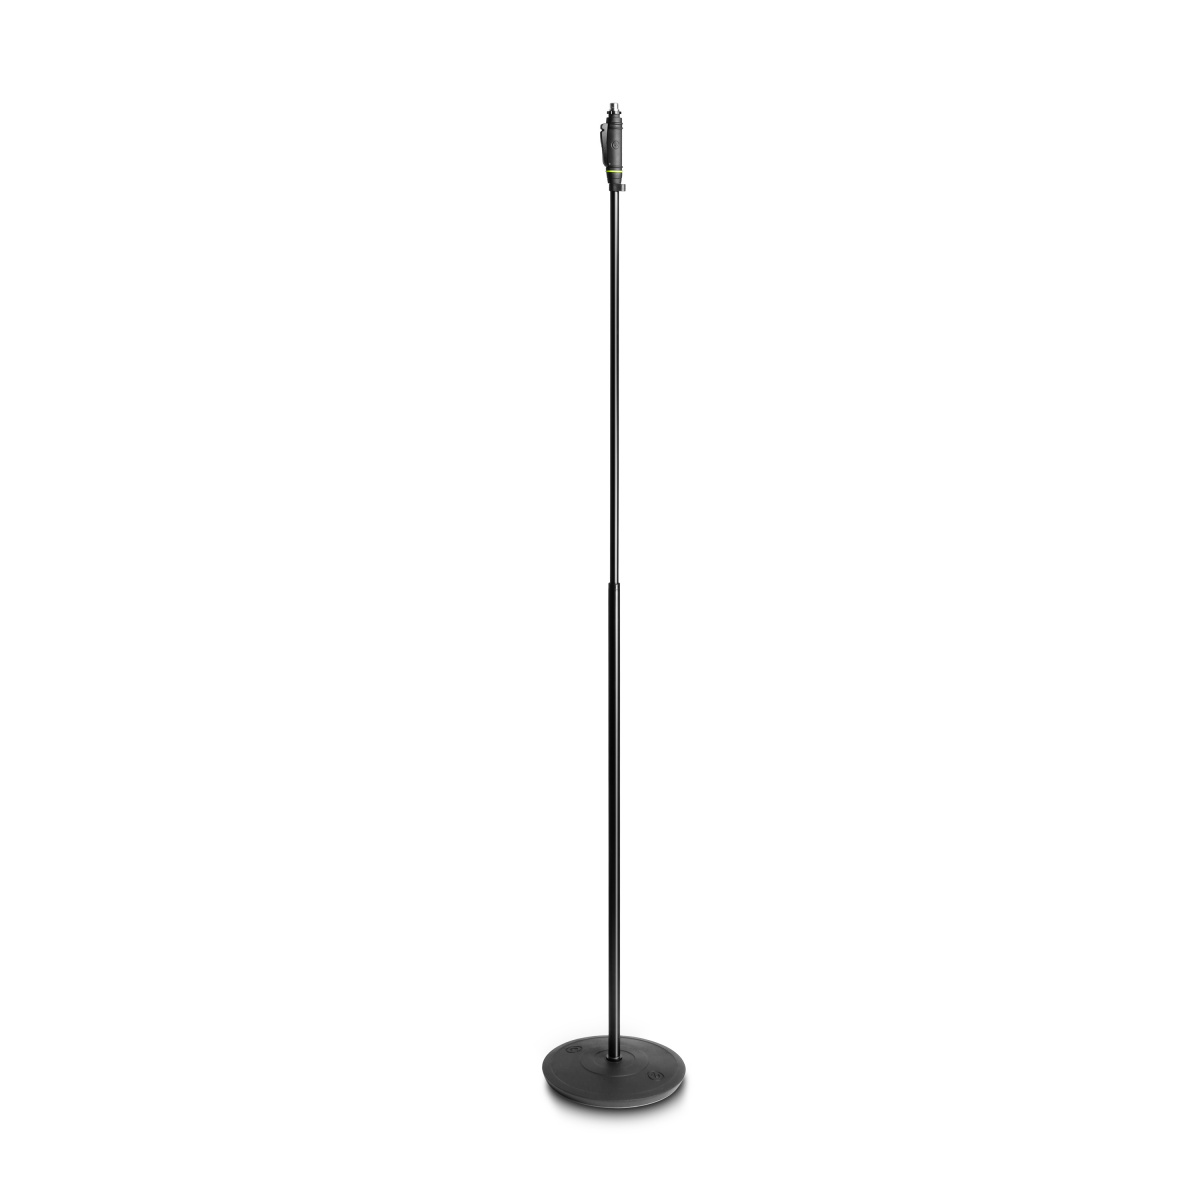 GRAVITY MS 231 HB - Прямая микрофонная стойка для вокалистов на тяжелом круглом основании. купить в prostore.me